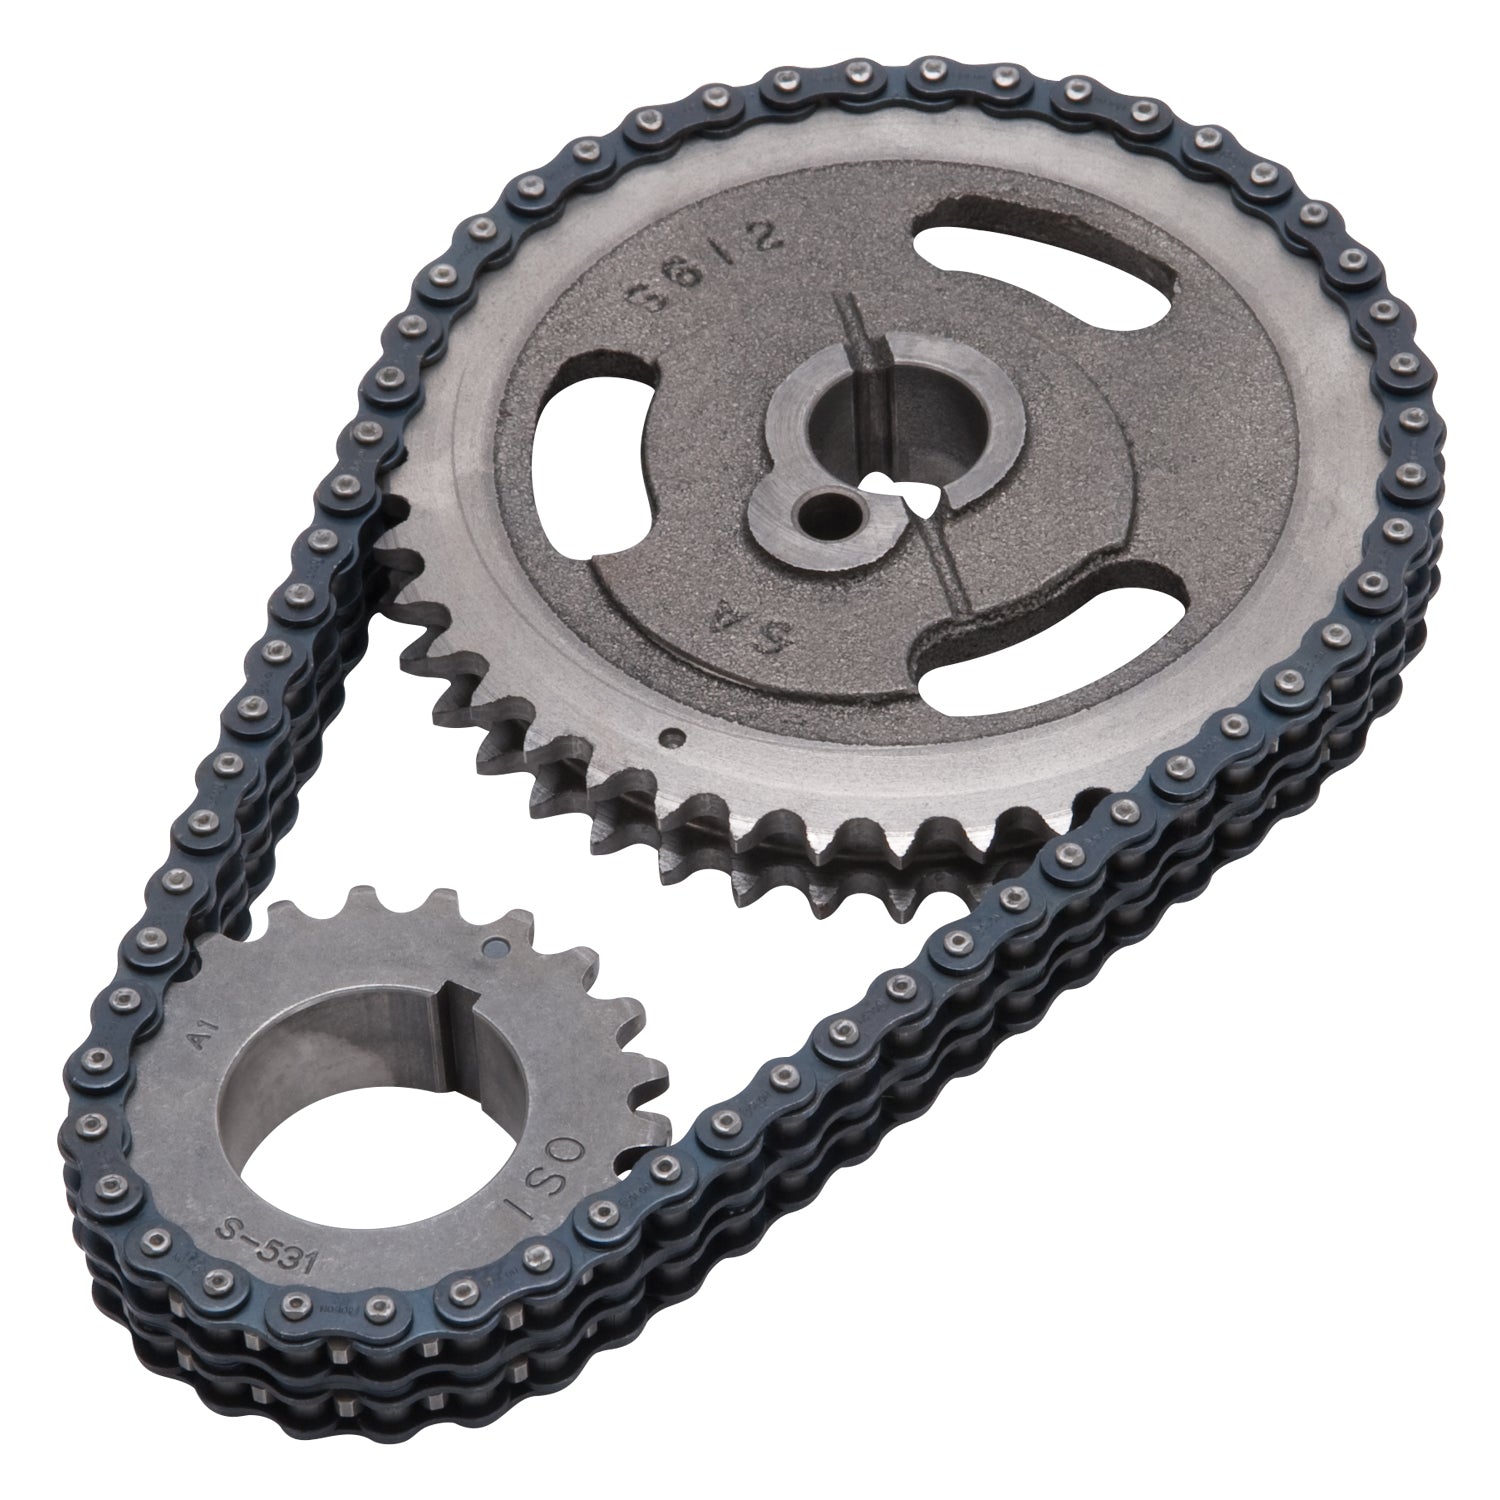 Edelbrock Performer-link Adjustable True-roller Timing Chain Set - 7814